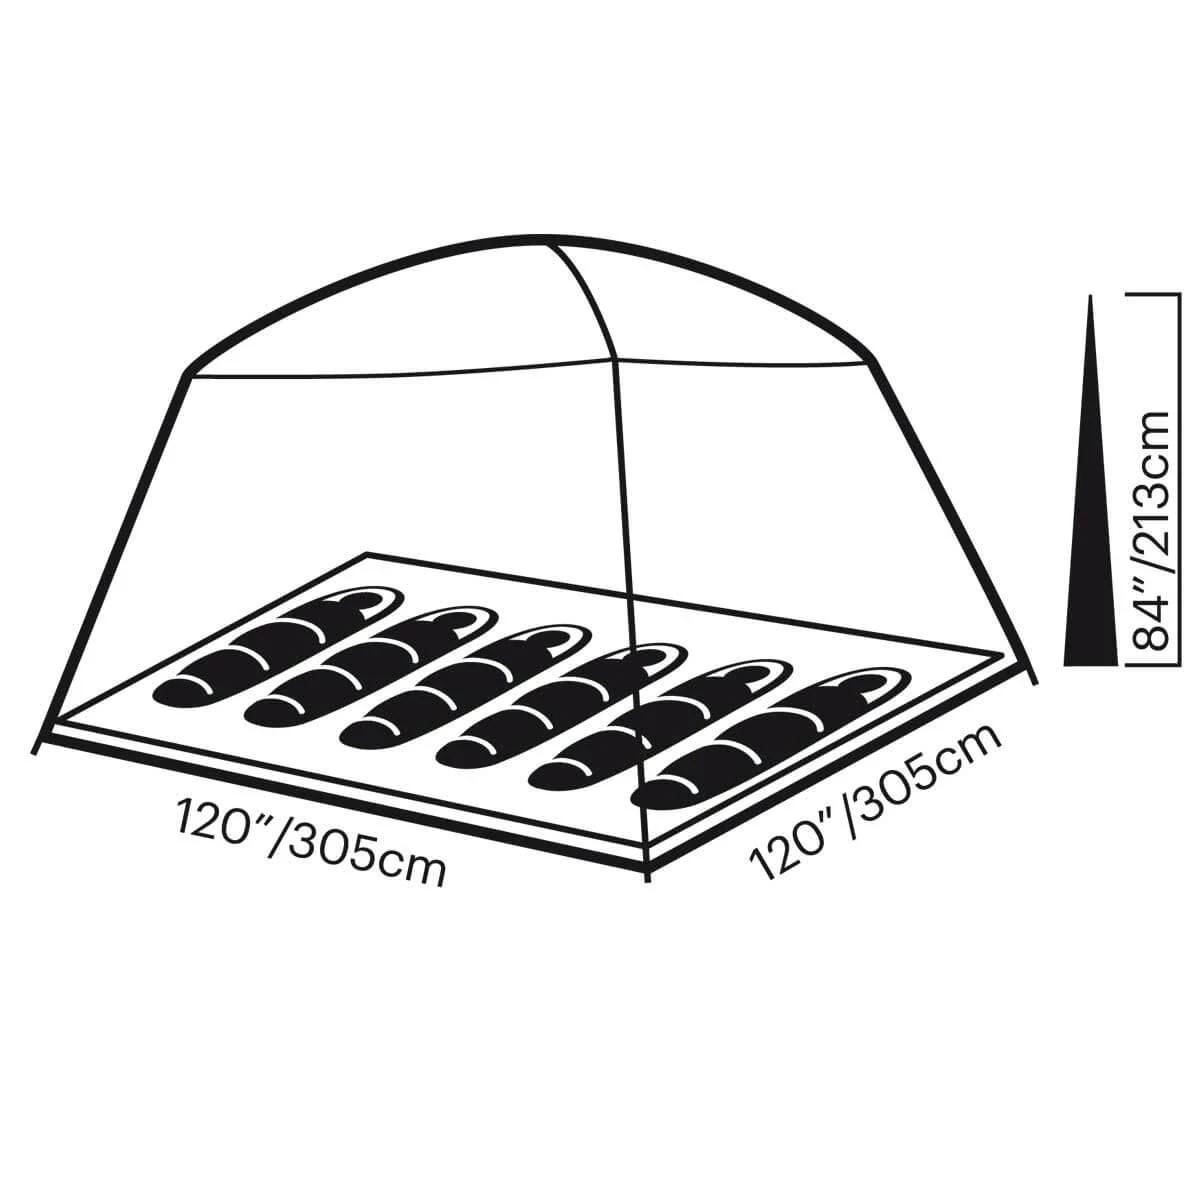 Copper Canyon LX 6 tent spec diagram